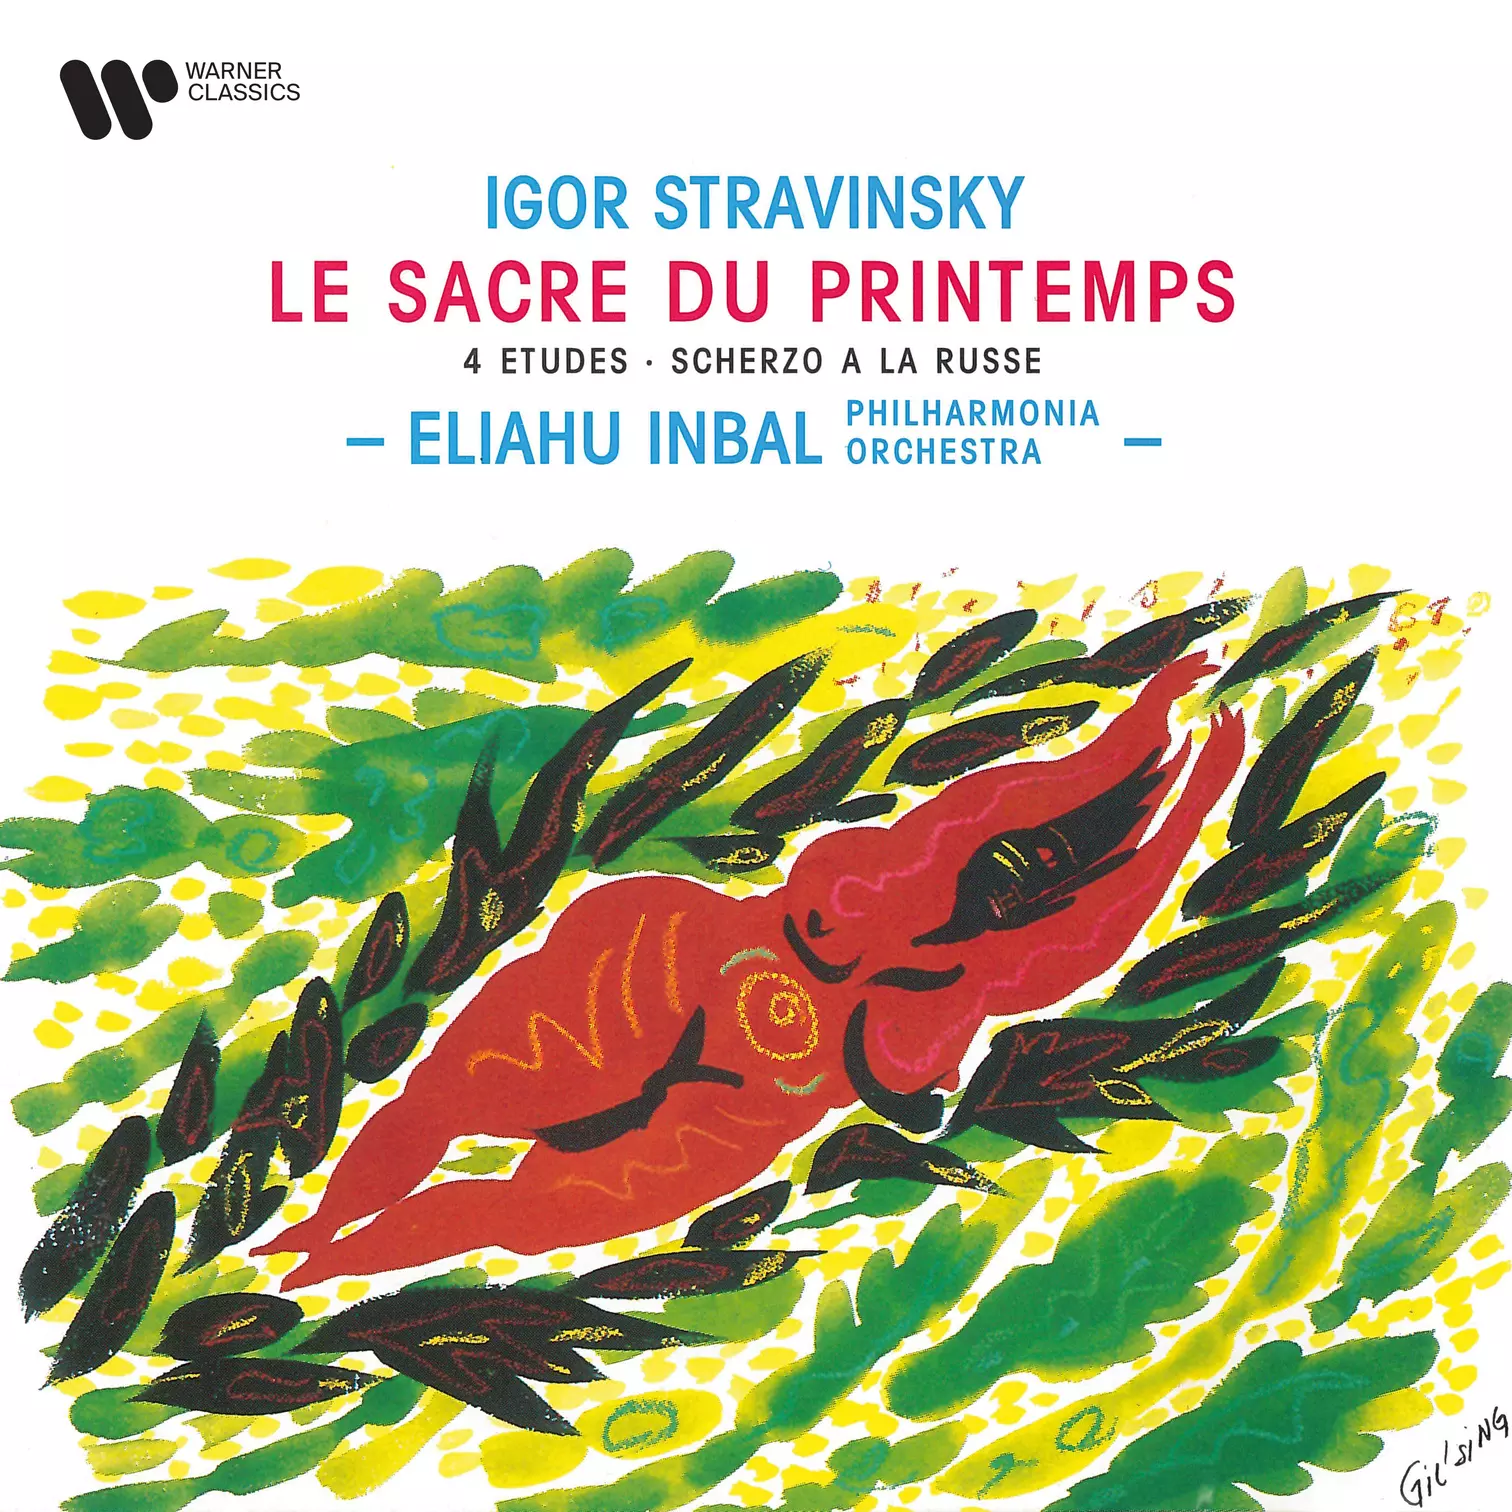 Stravinsky: Le sacre du printemps, 4 Études & Scherzo à la russe